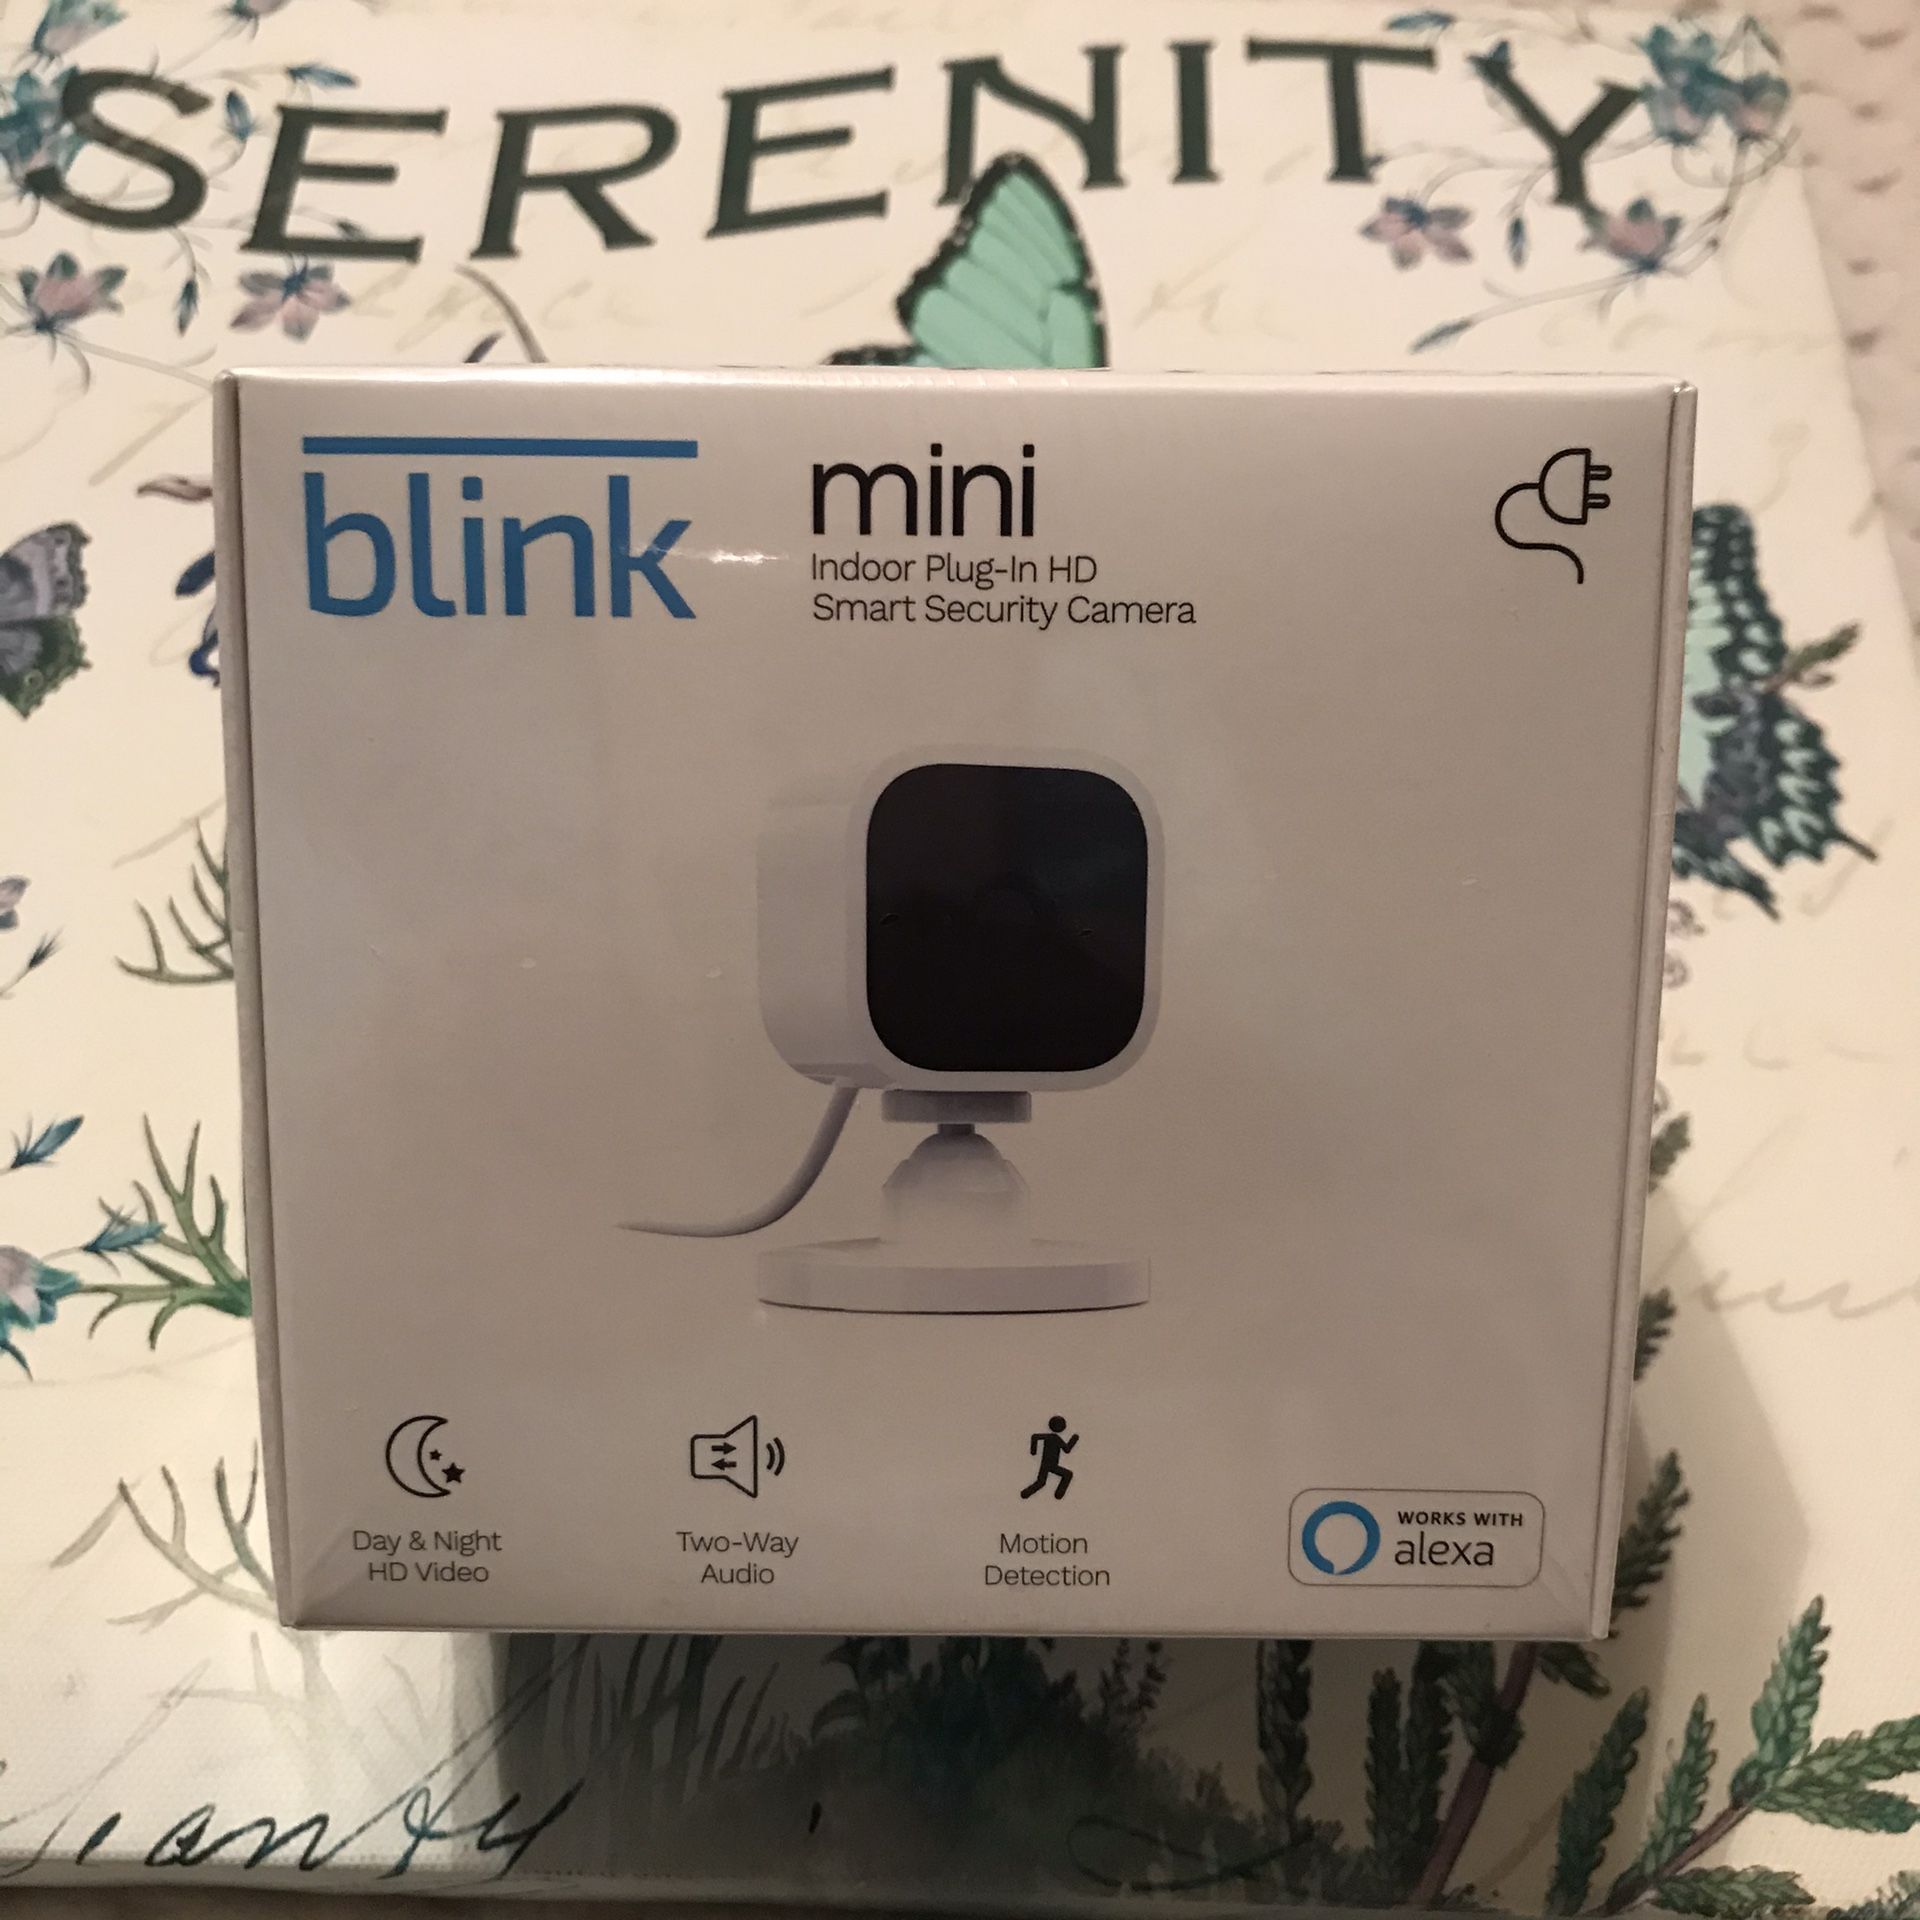 Blink mini indoor plug-in